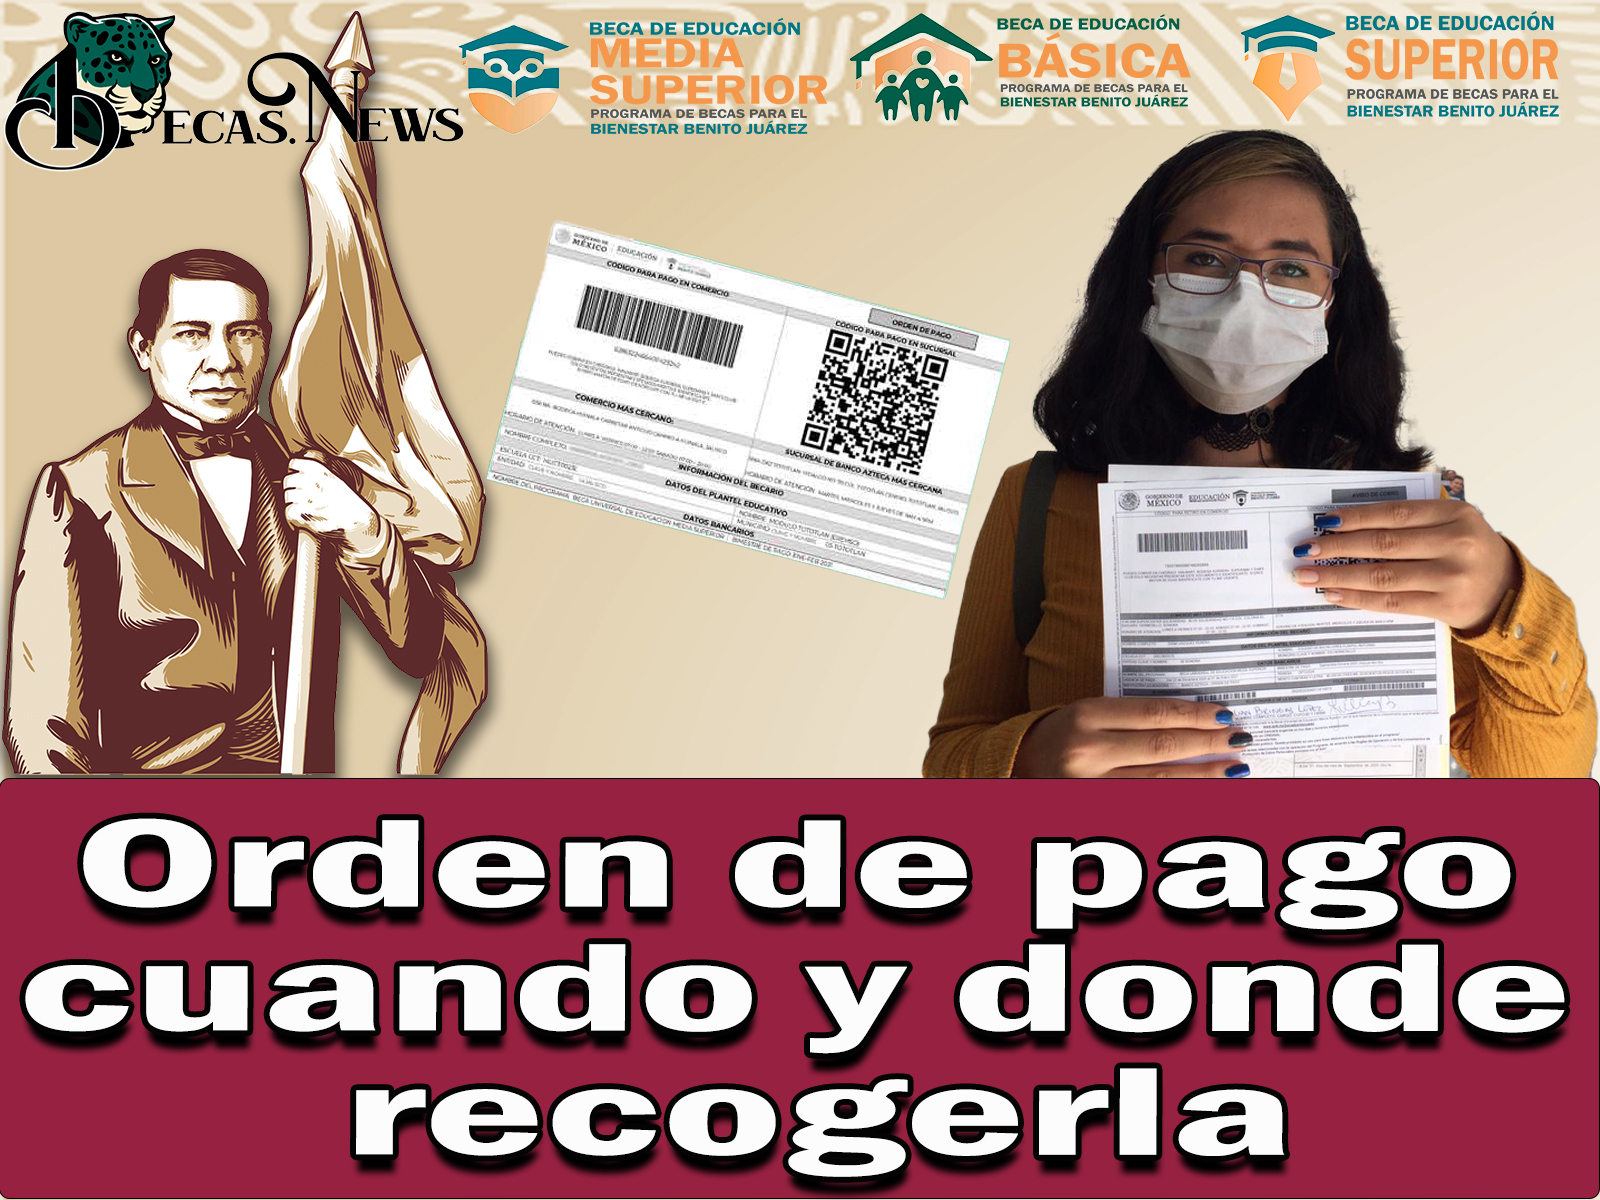 Becas Benito Juárez: Beneficiarios que cobran por orden de pago cuando y donde recogerla